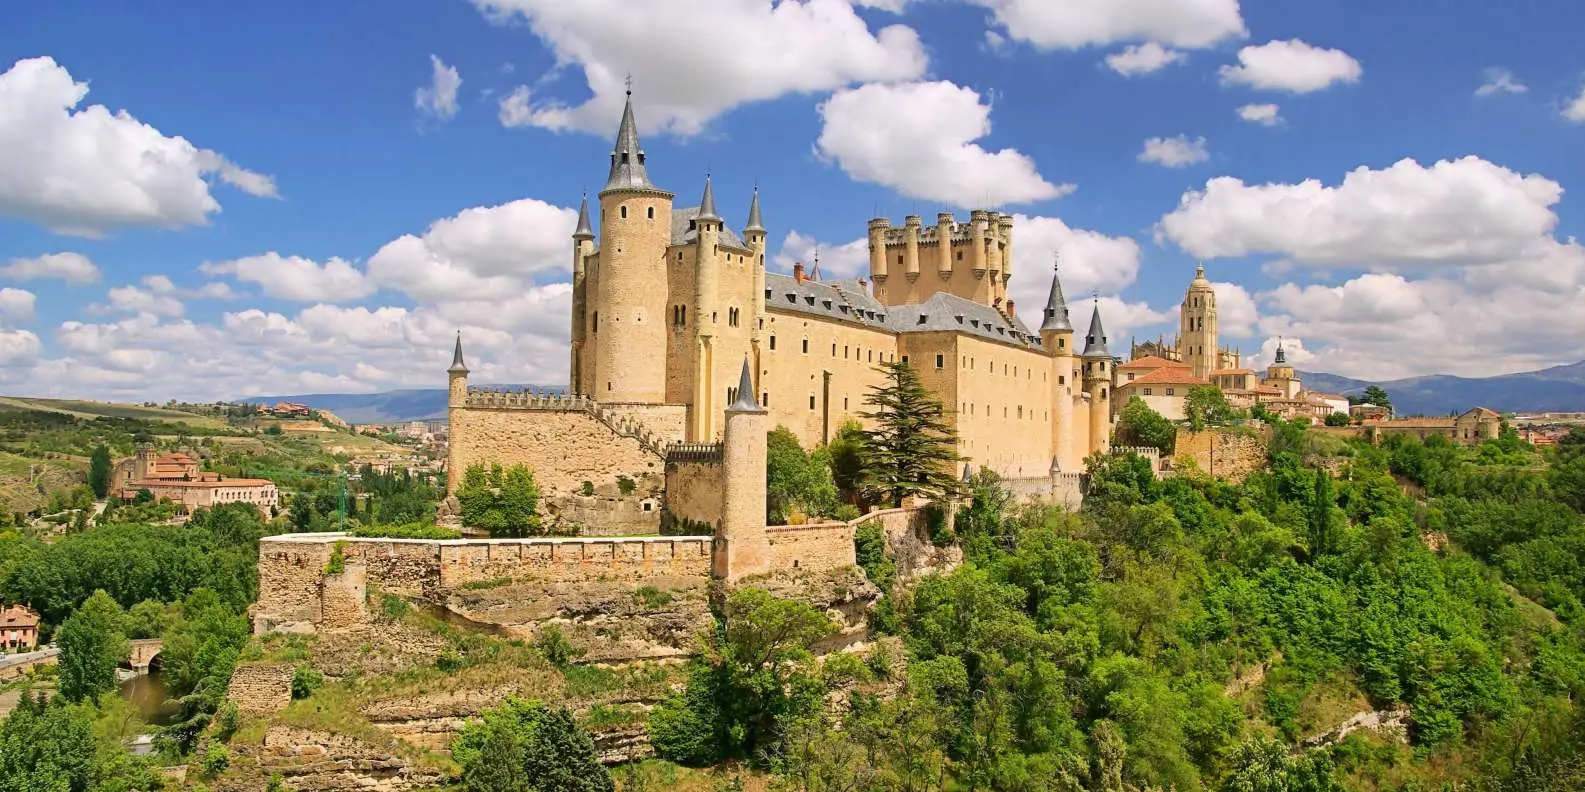 Castle Quiz Alcazar of Segovia, Spain